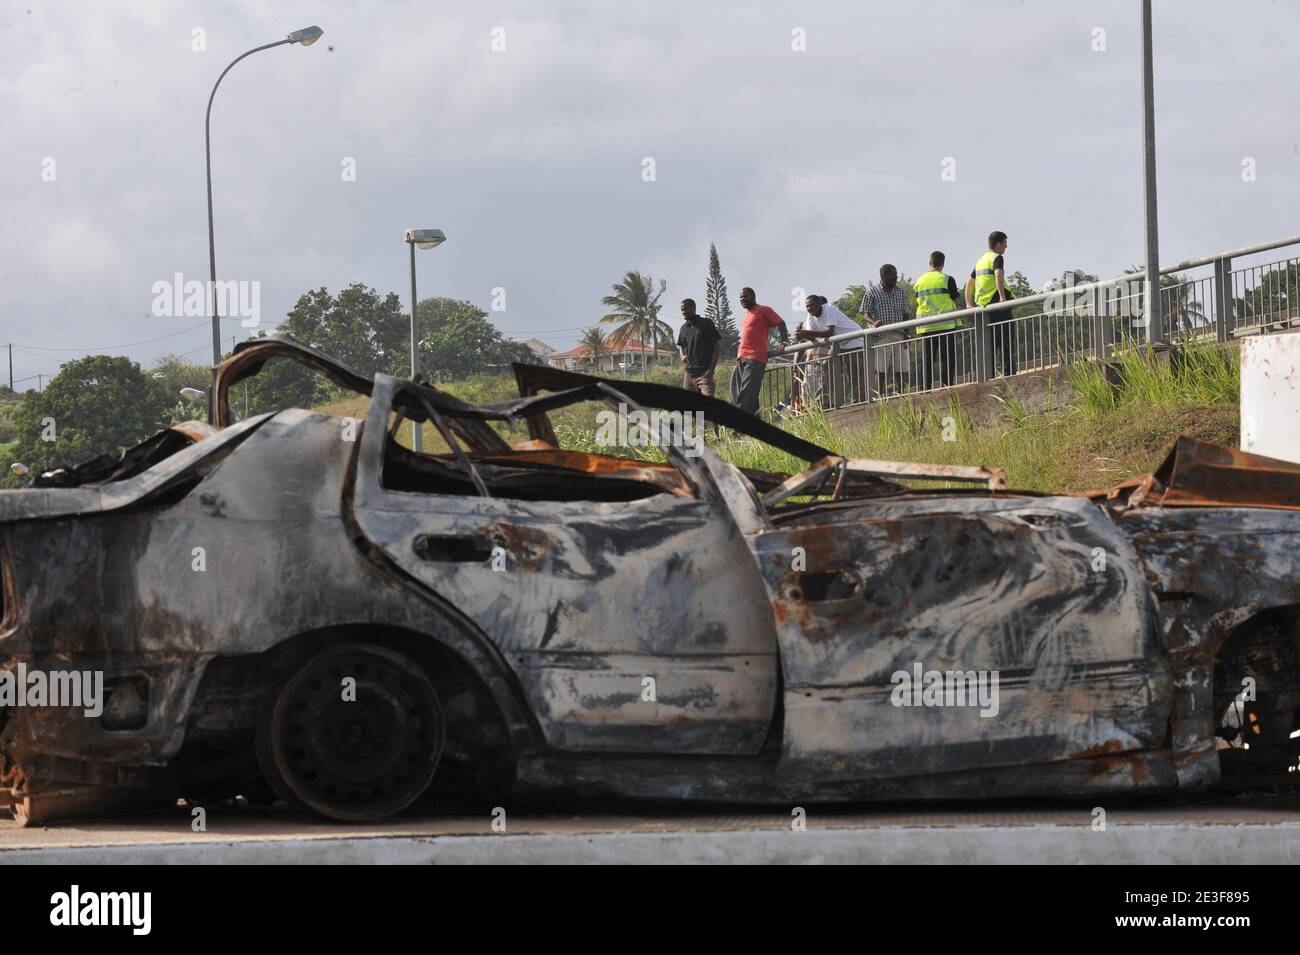 Veicolo bruciato durante le rivolte vicino a Petit-Bourg, isola dei Caraibi francesi della Guadalupa, Francia, il 20 febbraio 2009. Foto di Mousse/ABACAPRESS.COM Foto Stock